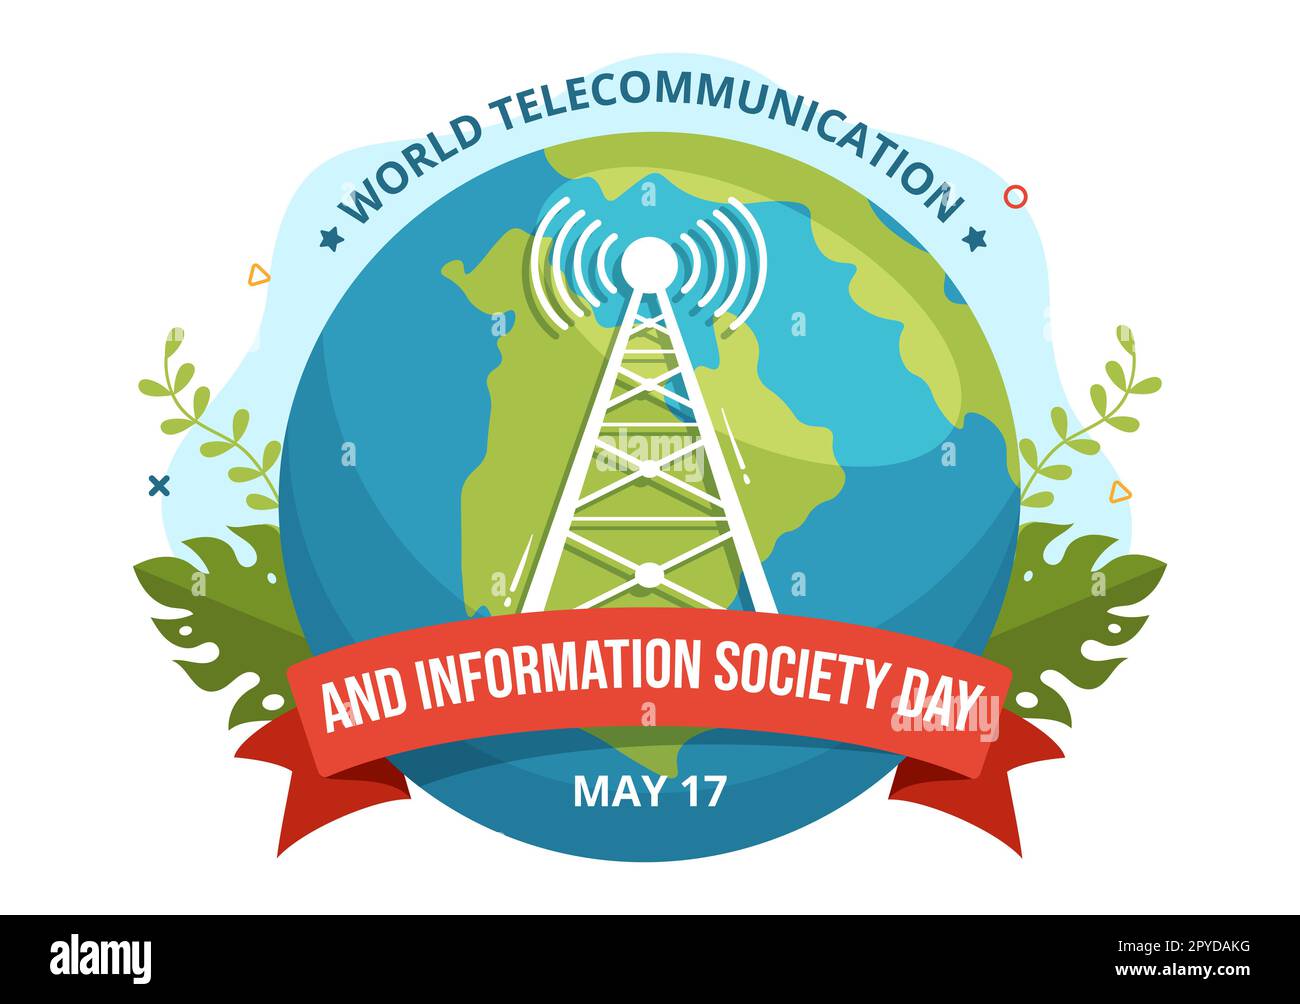 Welttag für Telekommunikation und Informationsgesellschaft am 17. Mai Illustration mit dem Kommunikationsnetzwerk der Erde in handgezeichneten Vorlagen Stockfoto